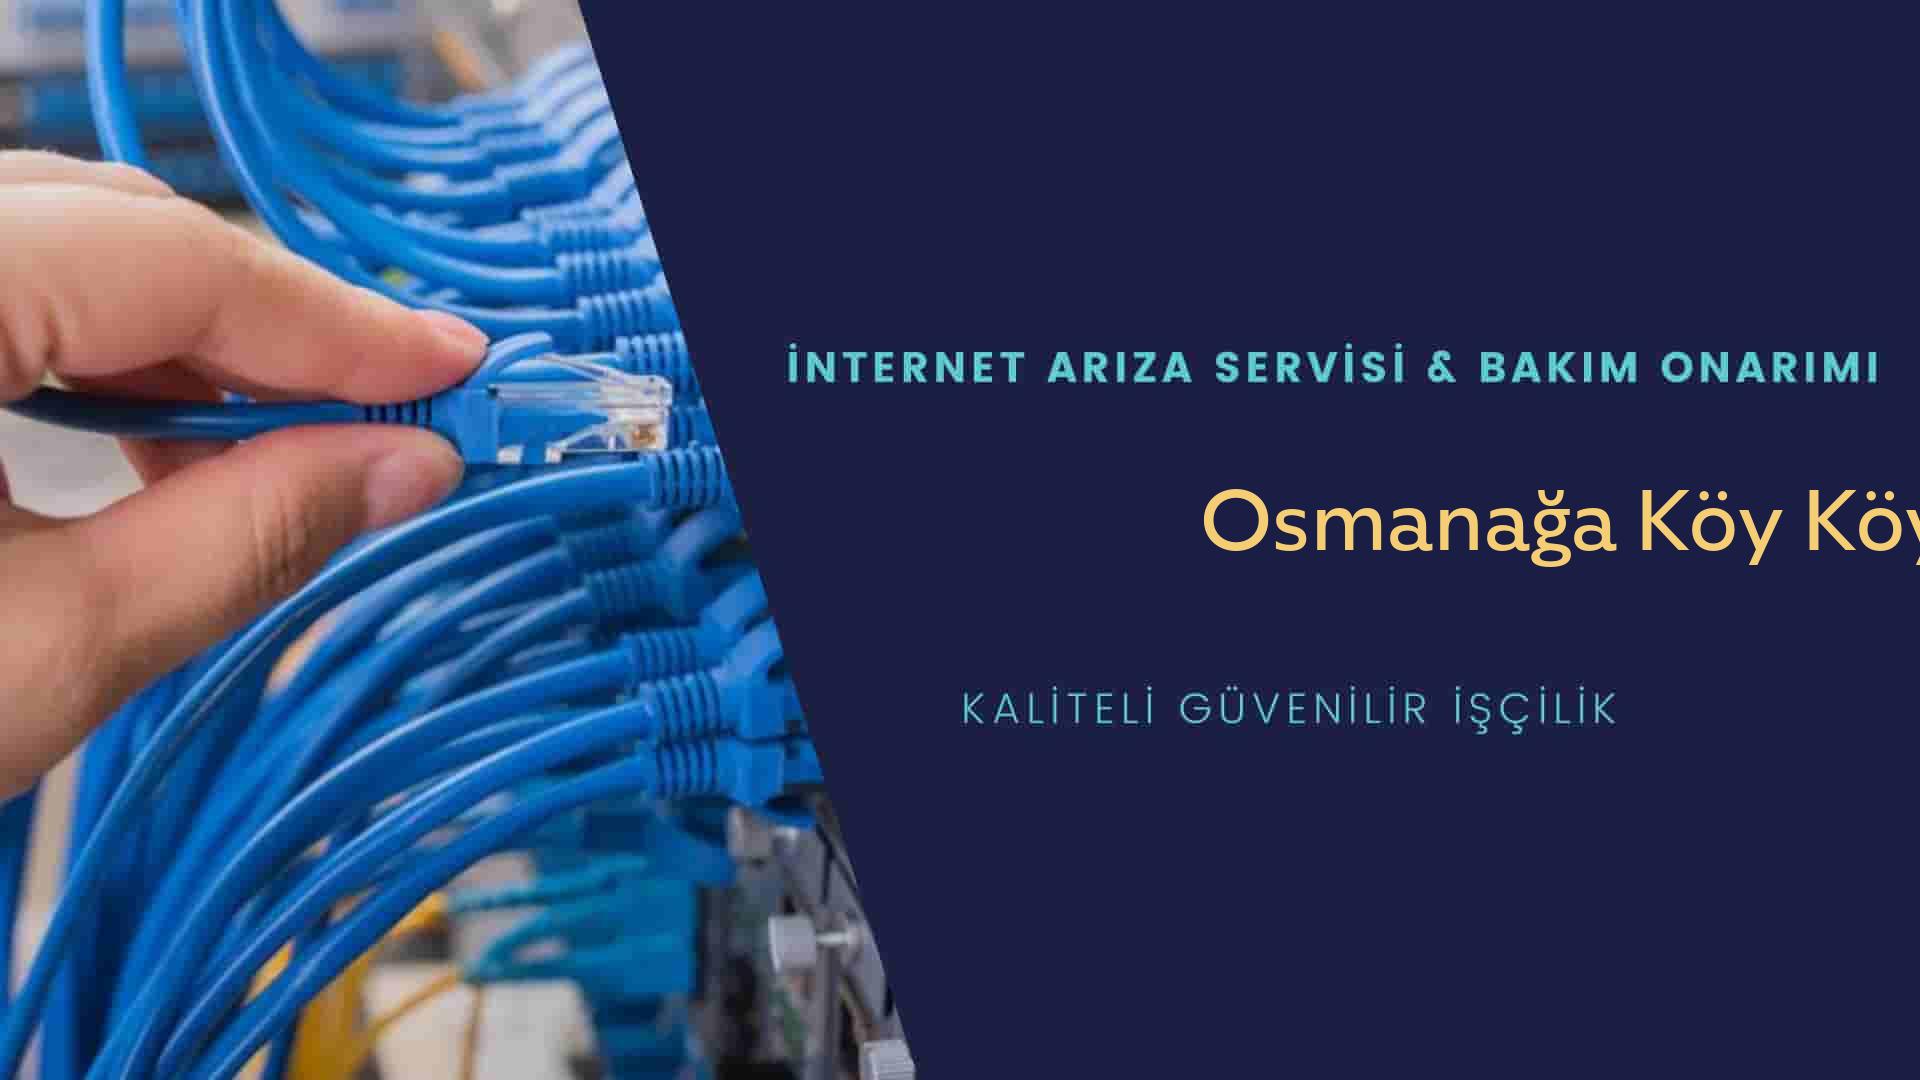 Osmanağa Köy Köyü internet kablosu çekimi yapan yerler veya elektrikçiler mi? arıyorsunuz doğru yerdesiniz o zaman sizlere 7/24 yardımcı olacak profesyonel ustalarımız bir telefon kadar yakındır size.